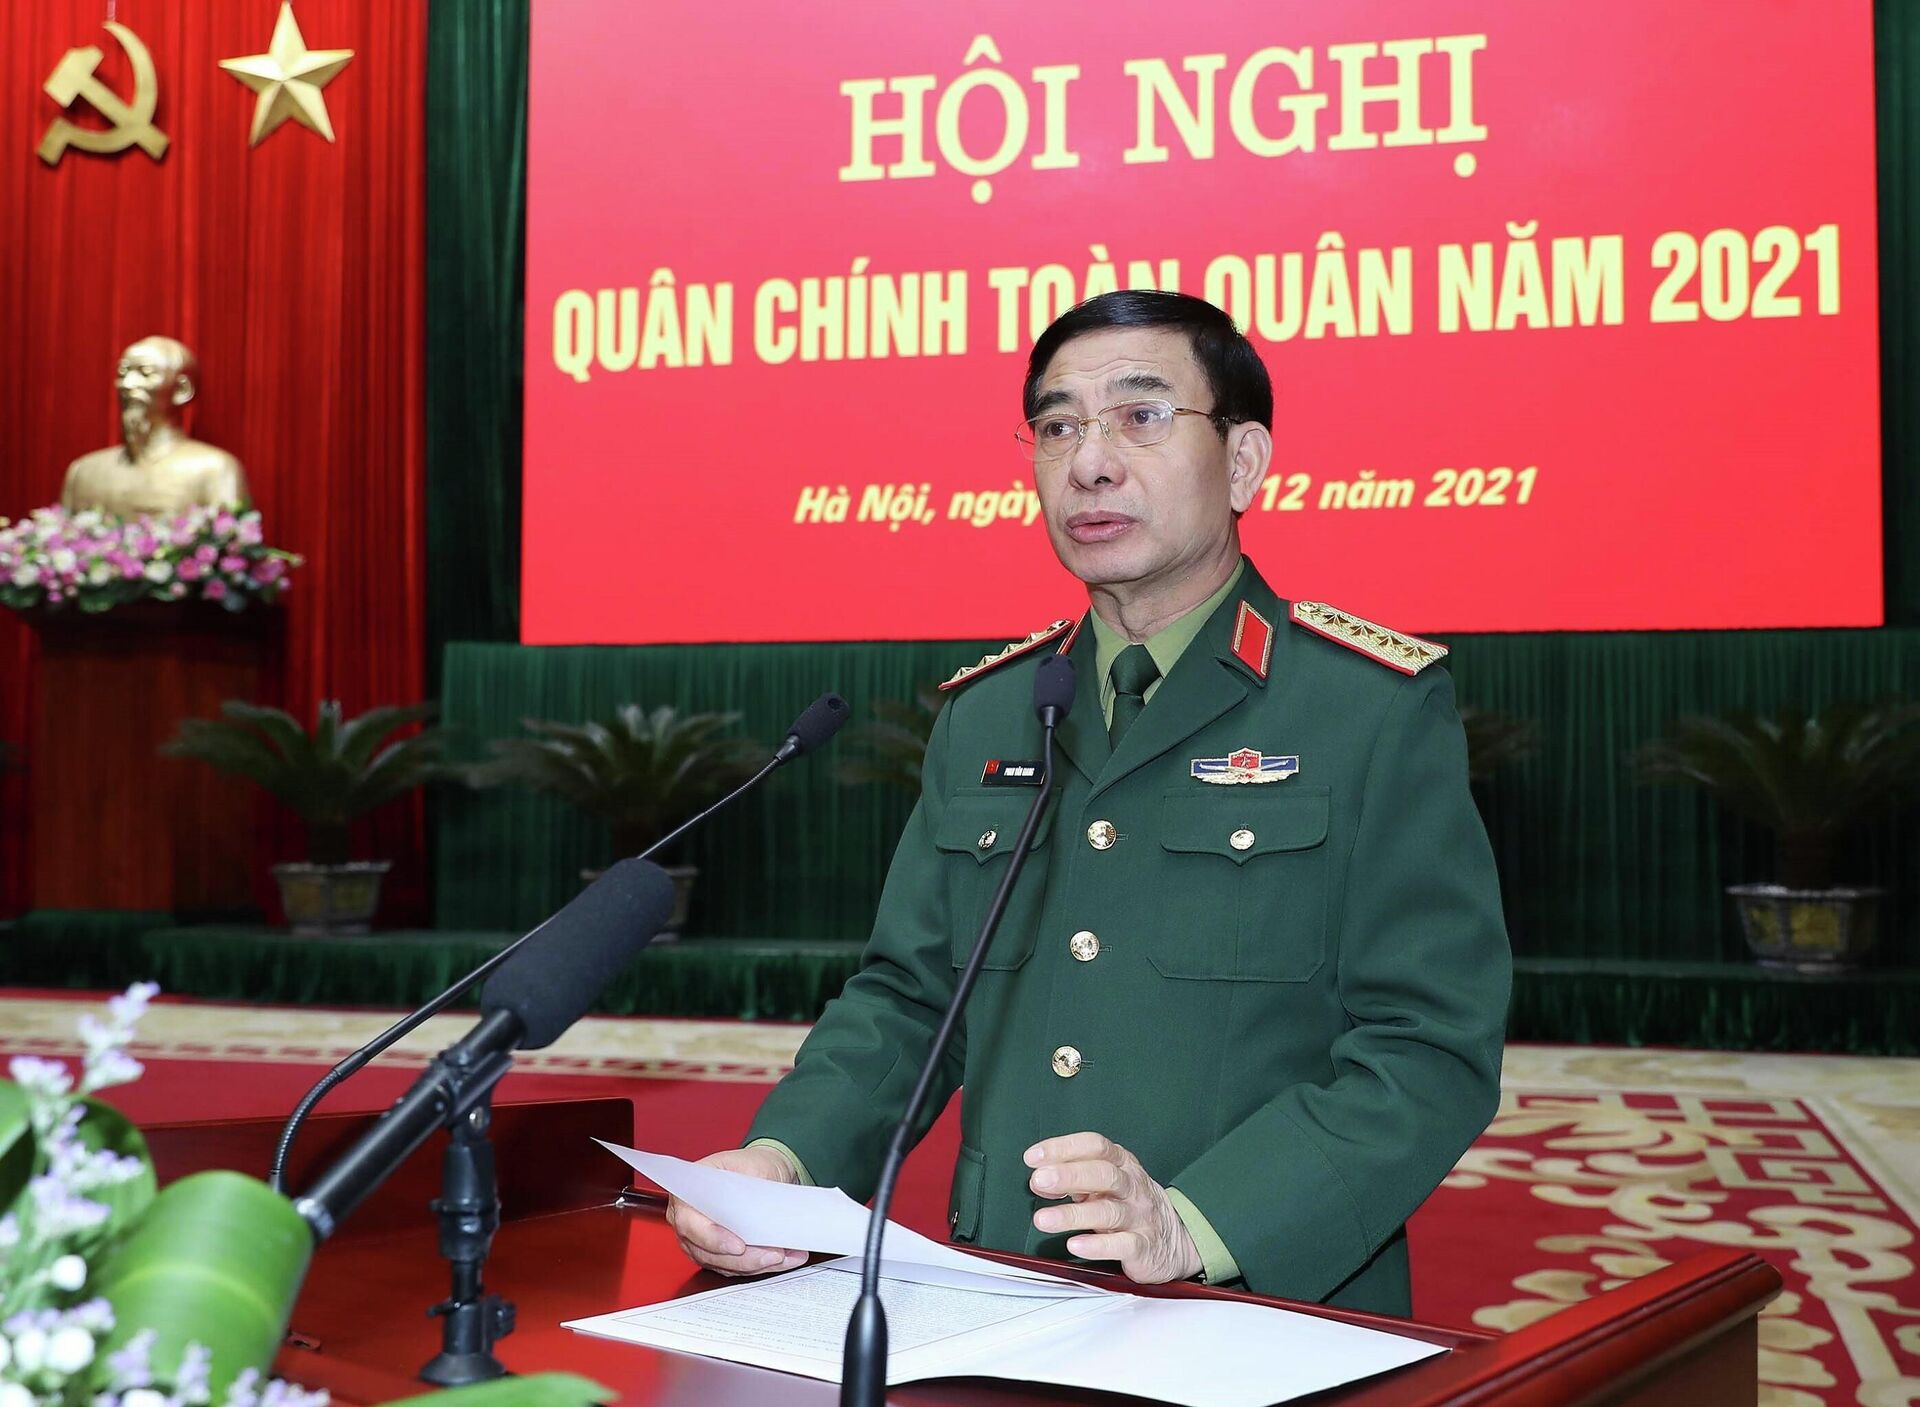 Đại tướng Phan Văn Giang, Bộ trưởng Bộ Quốc phòng phát biểu - Sputnik Việt Nam, 1920, 23.12.2021